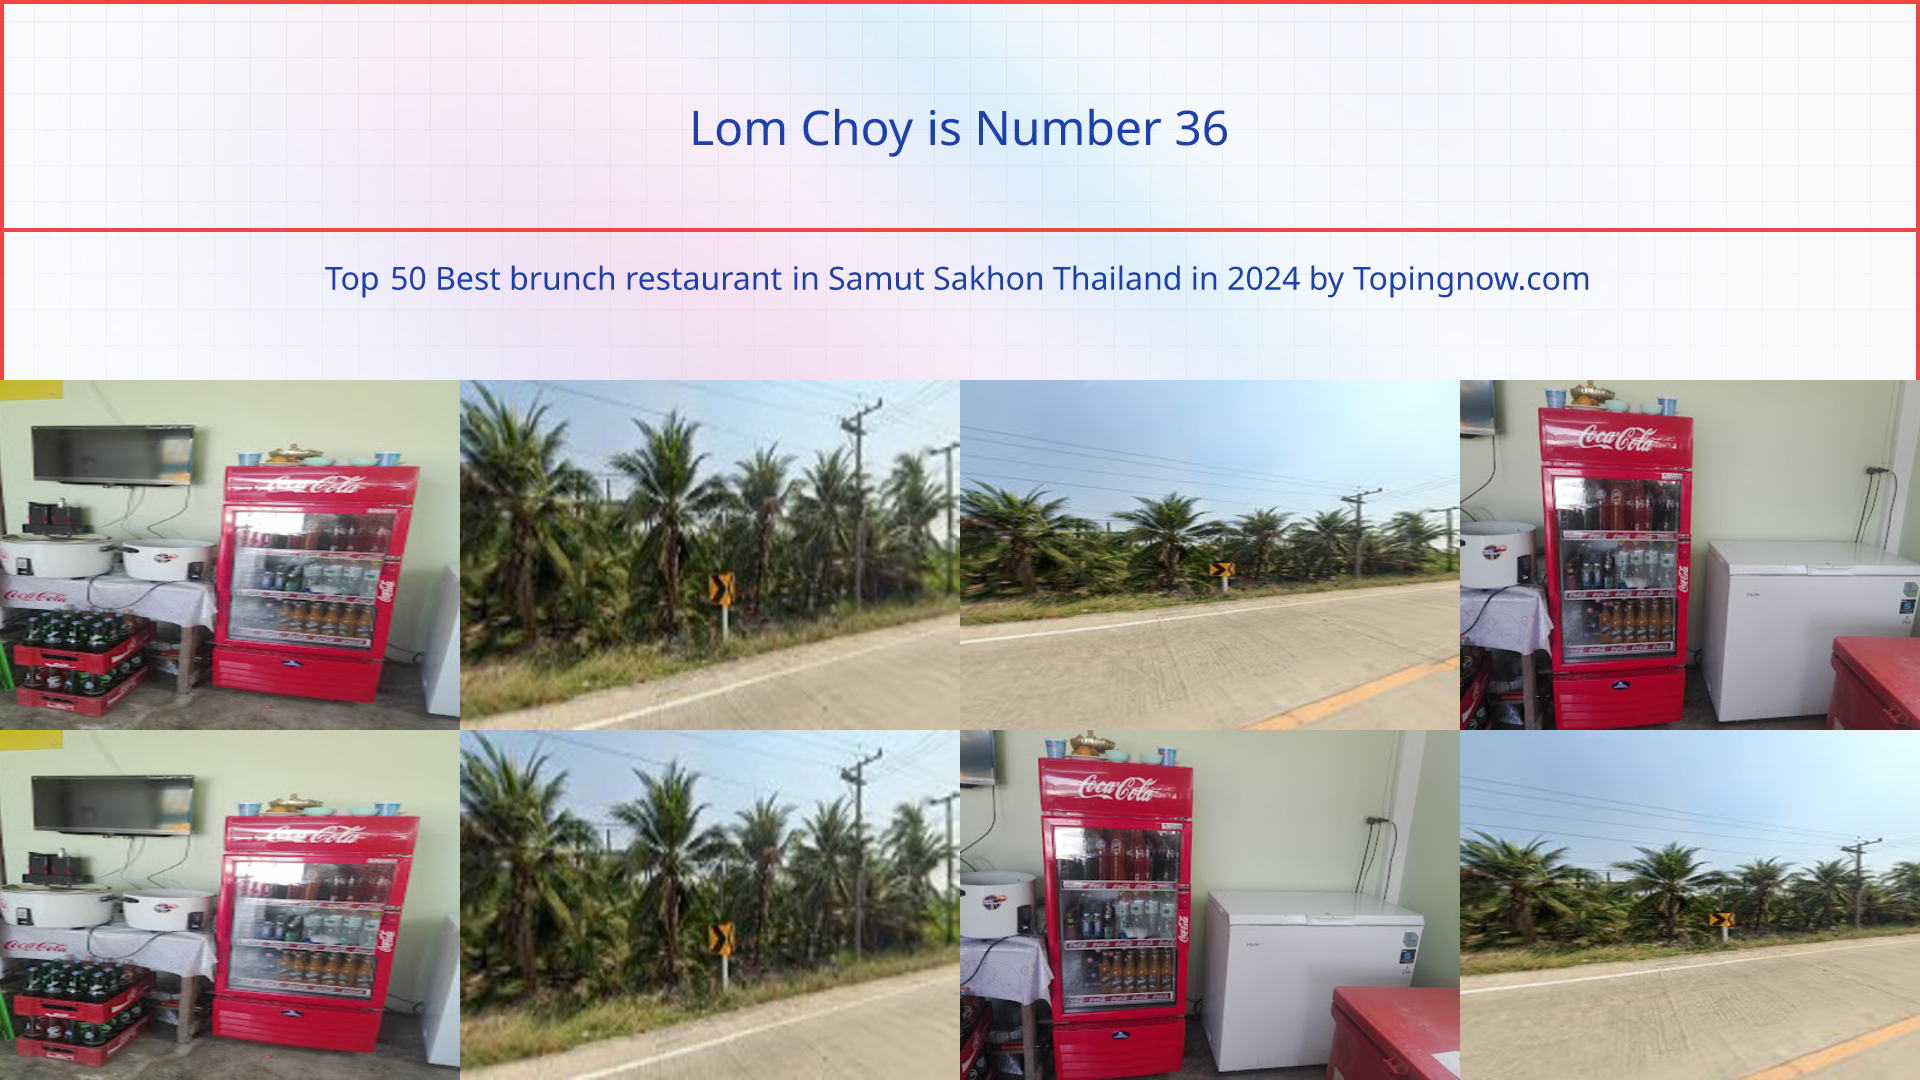 Lom Choy: Top 50 Best brunch restaurant in Samut Sakhon Thailand in 2024